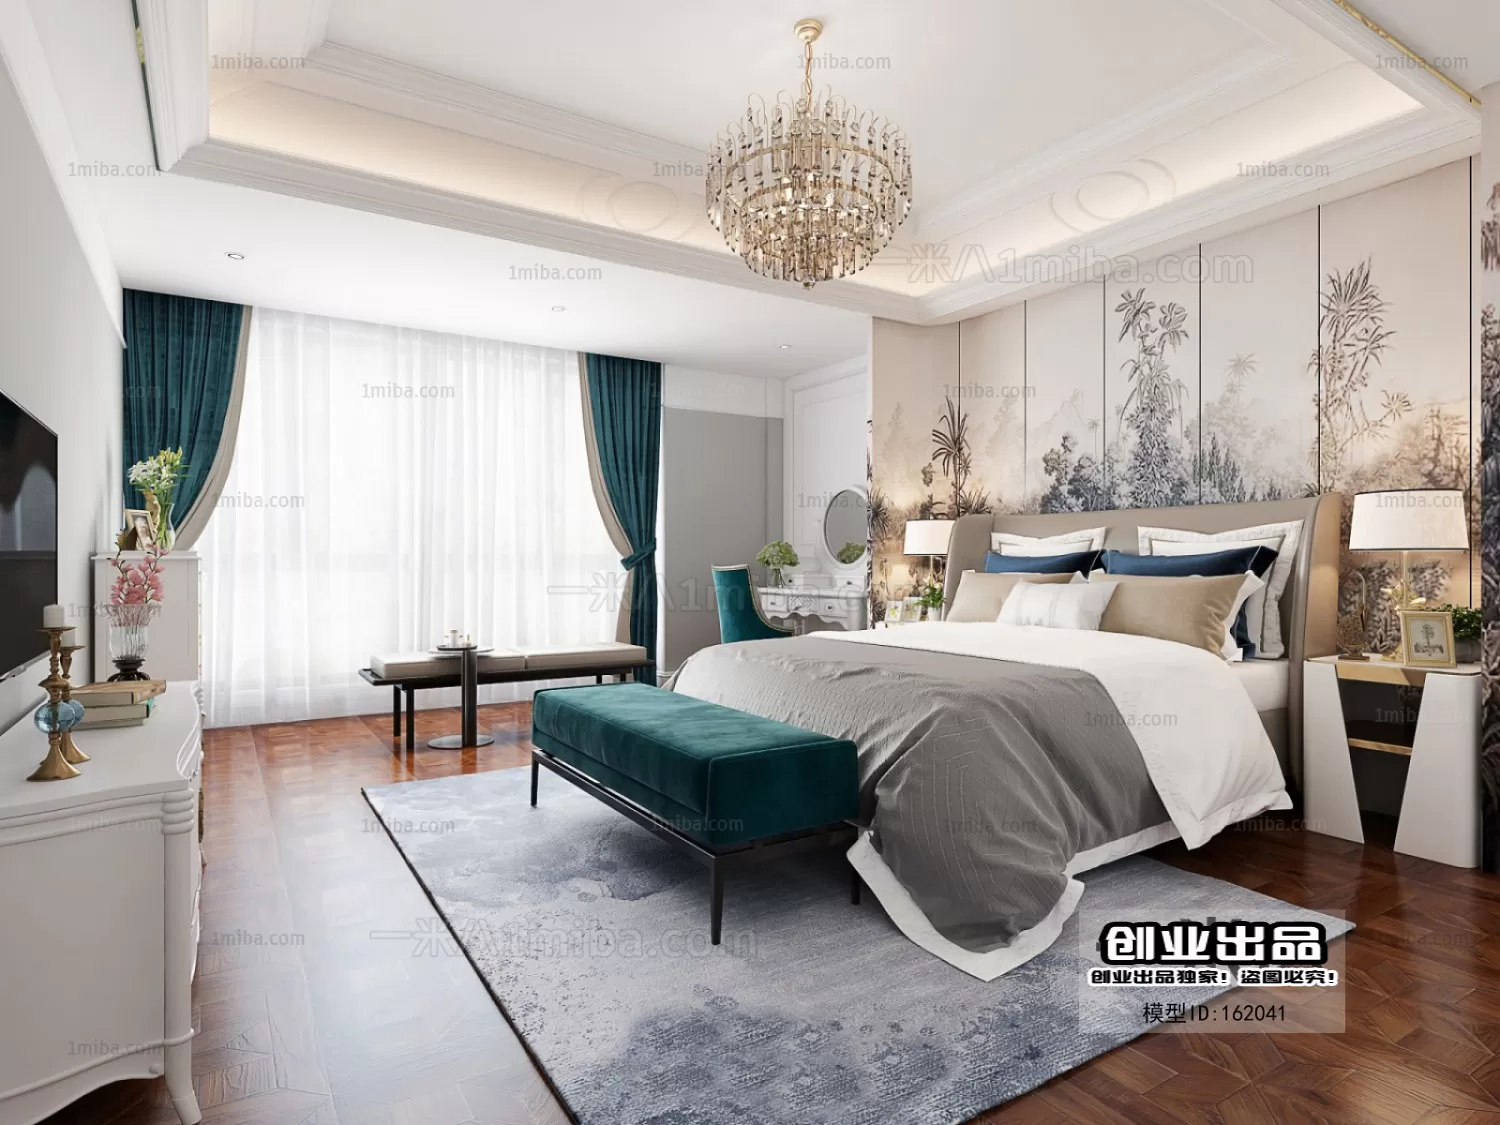 Bedroom – European Design – 3D66 – 3D Scenes – 042